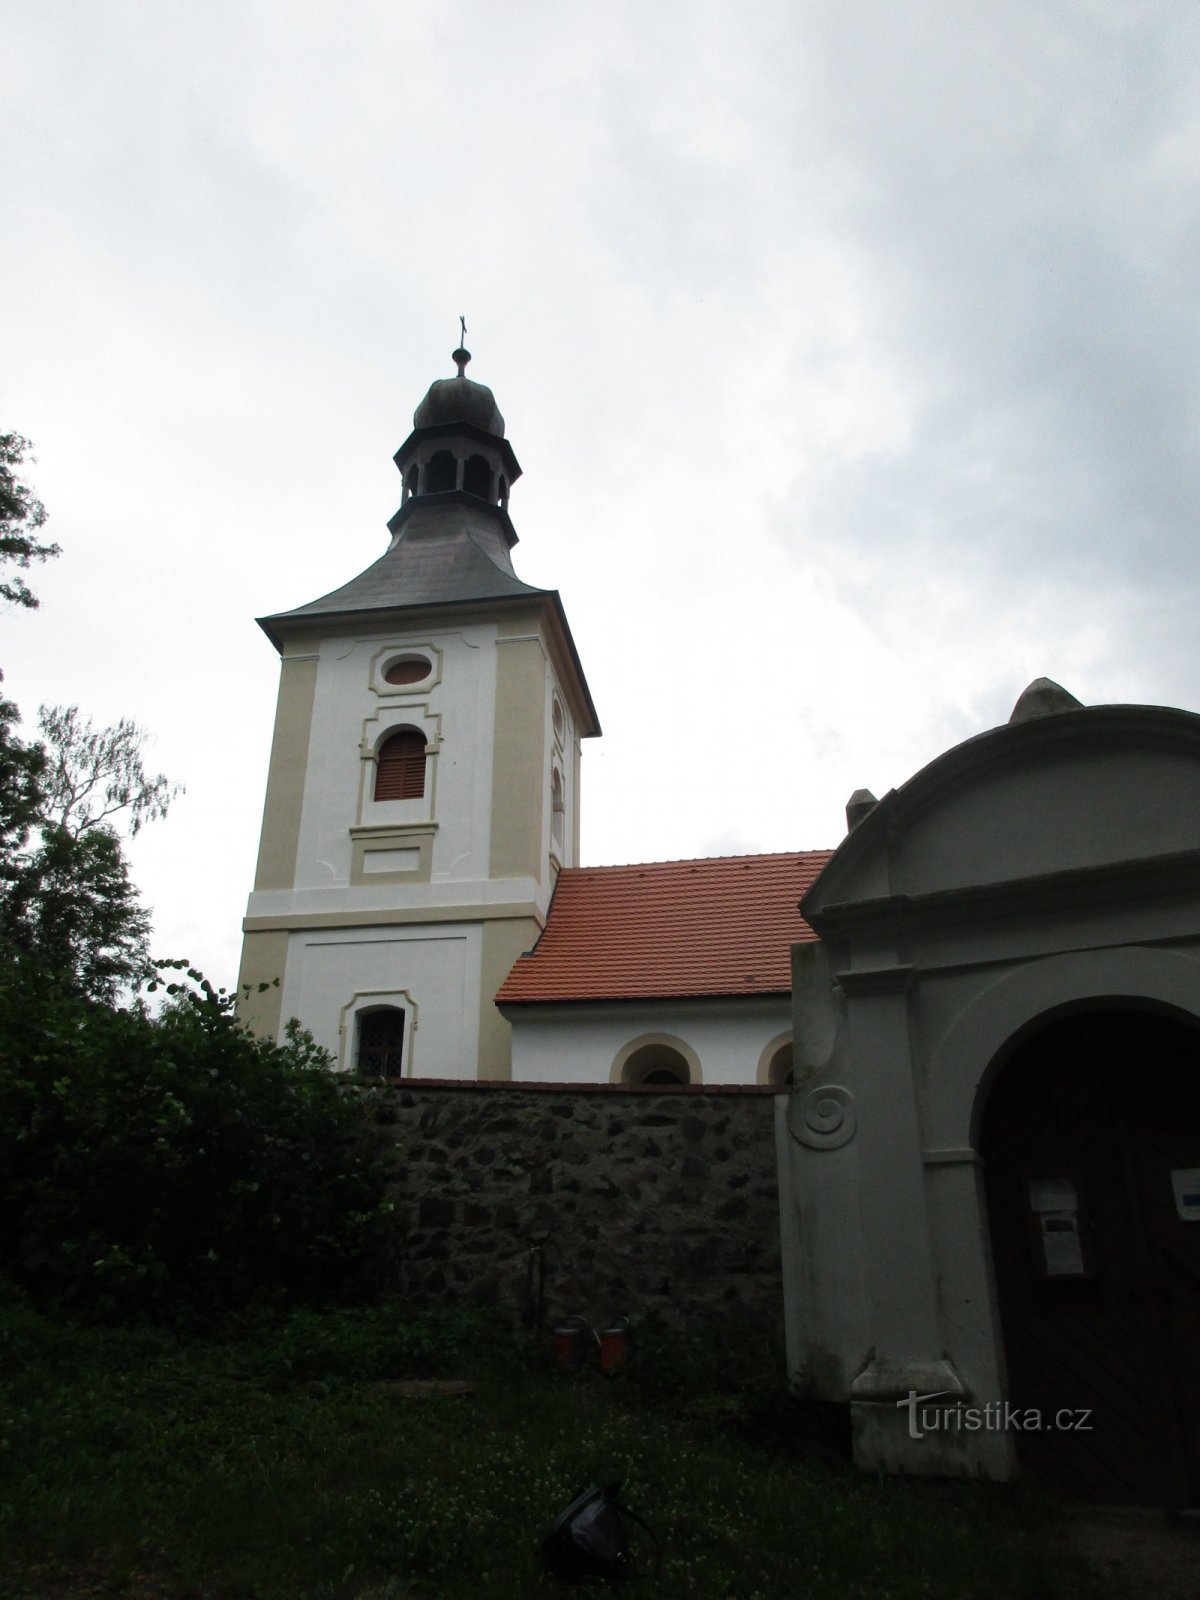 εκκλησία με πύλη εισόδου